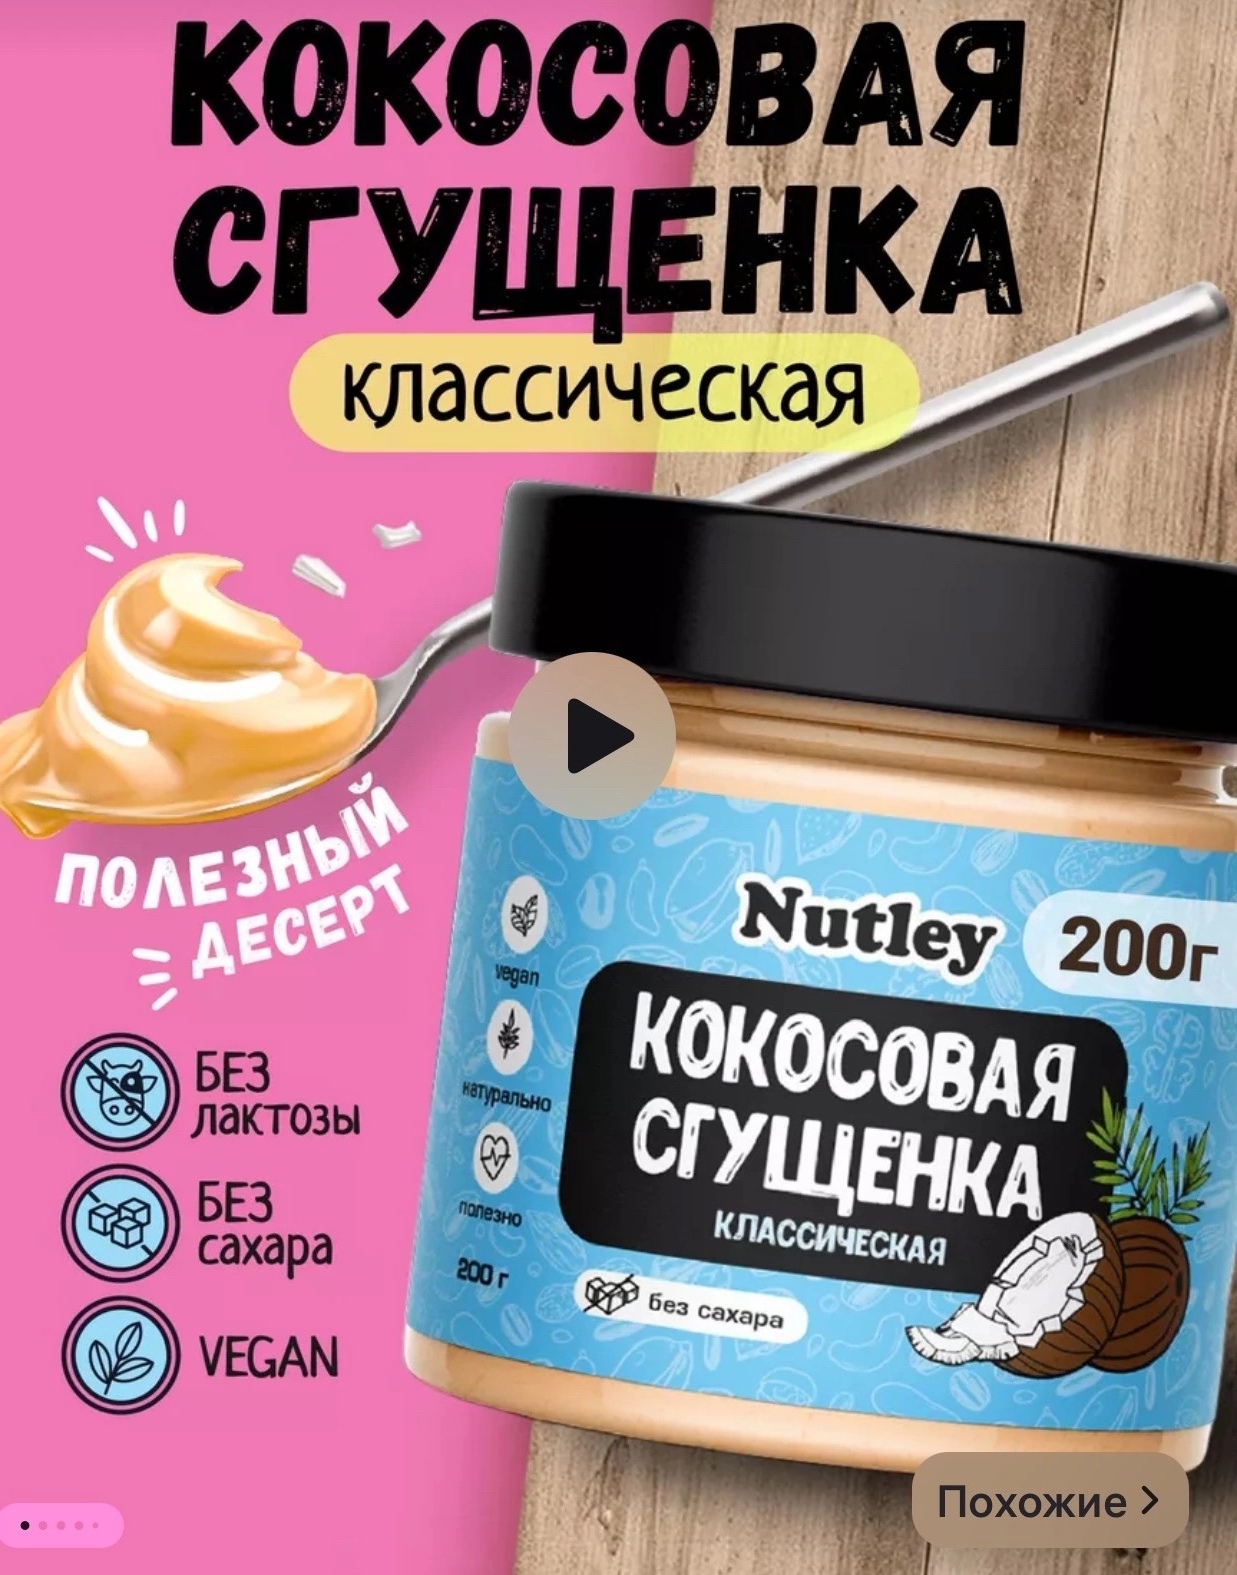 Кокосовая сгущенка классическая Nutley  200 гр.